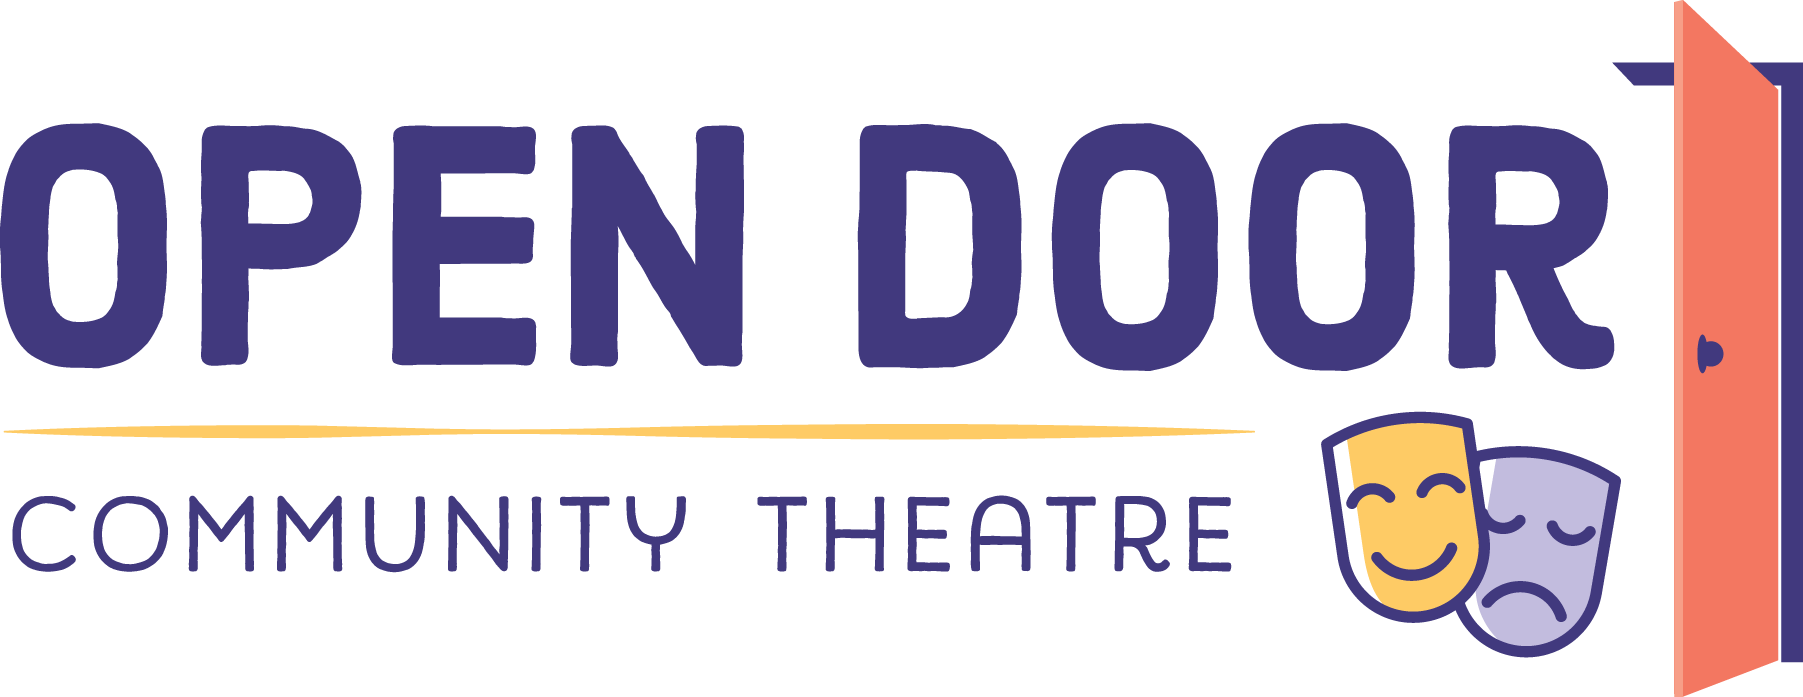 Open Door Community Theatre